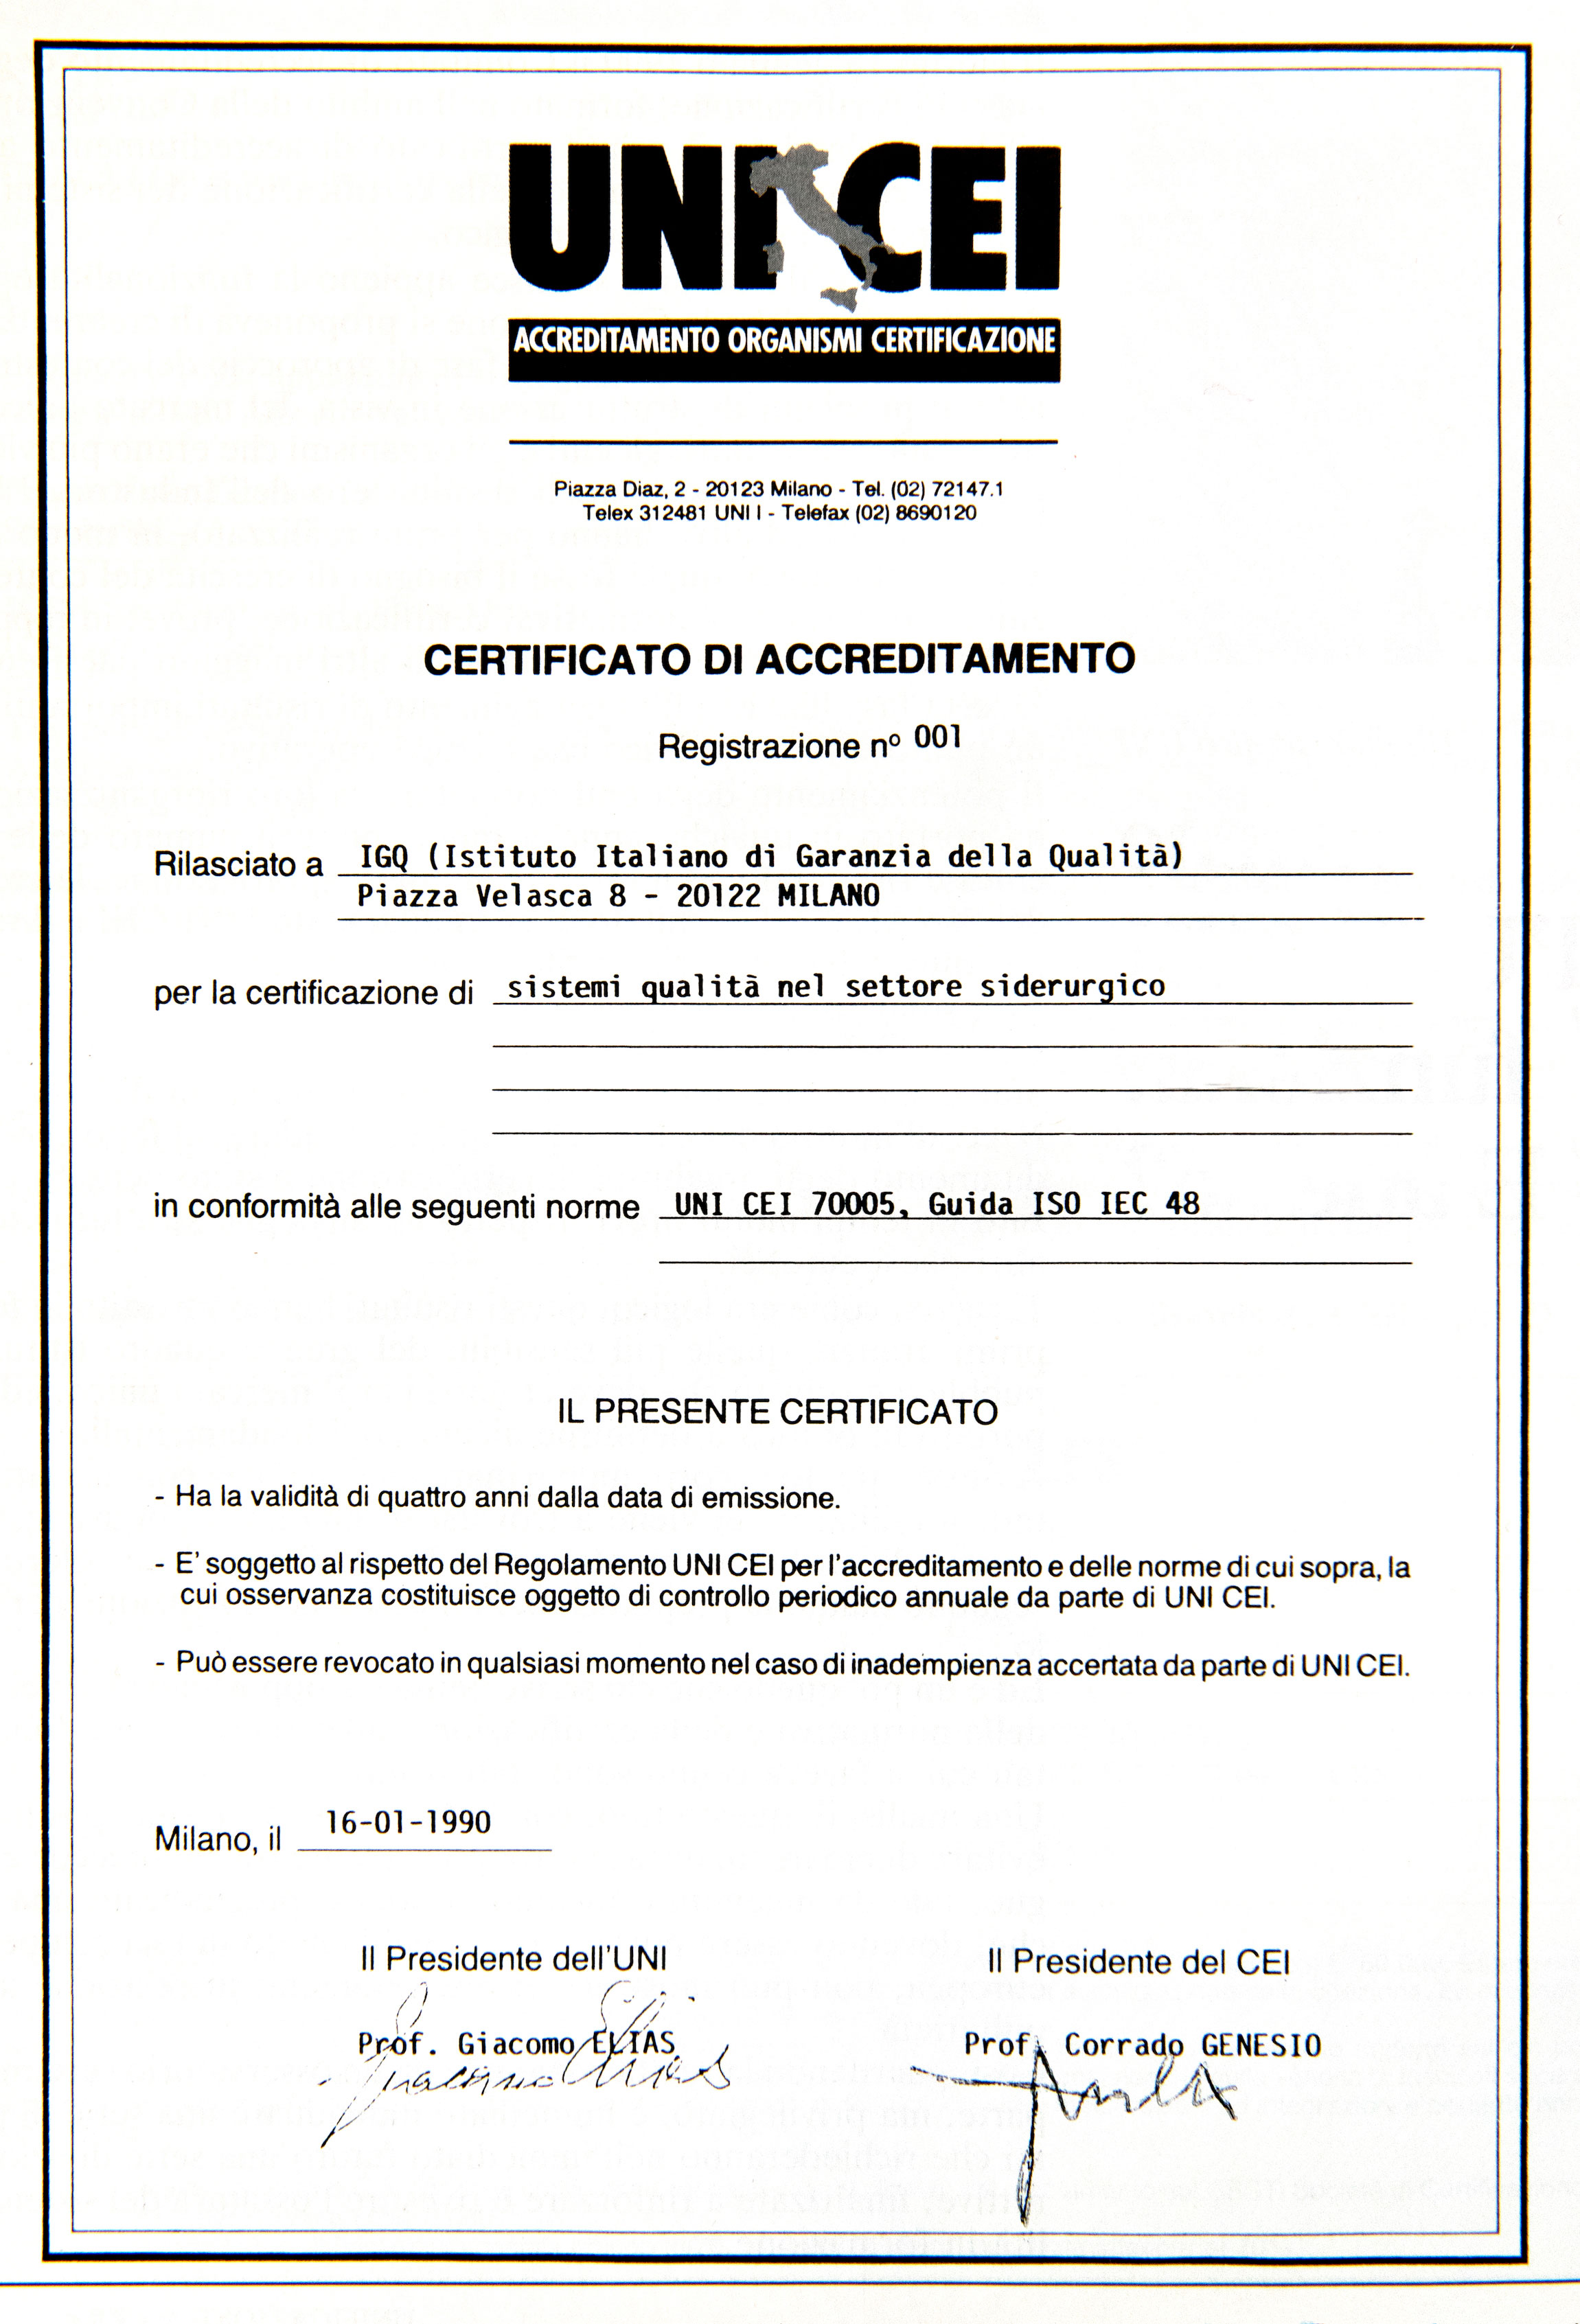 Primo certificato di accreditamento UNI-CEI rilasciato a IGQ.